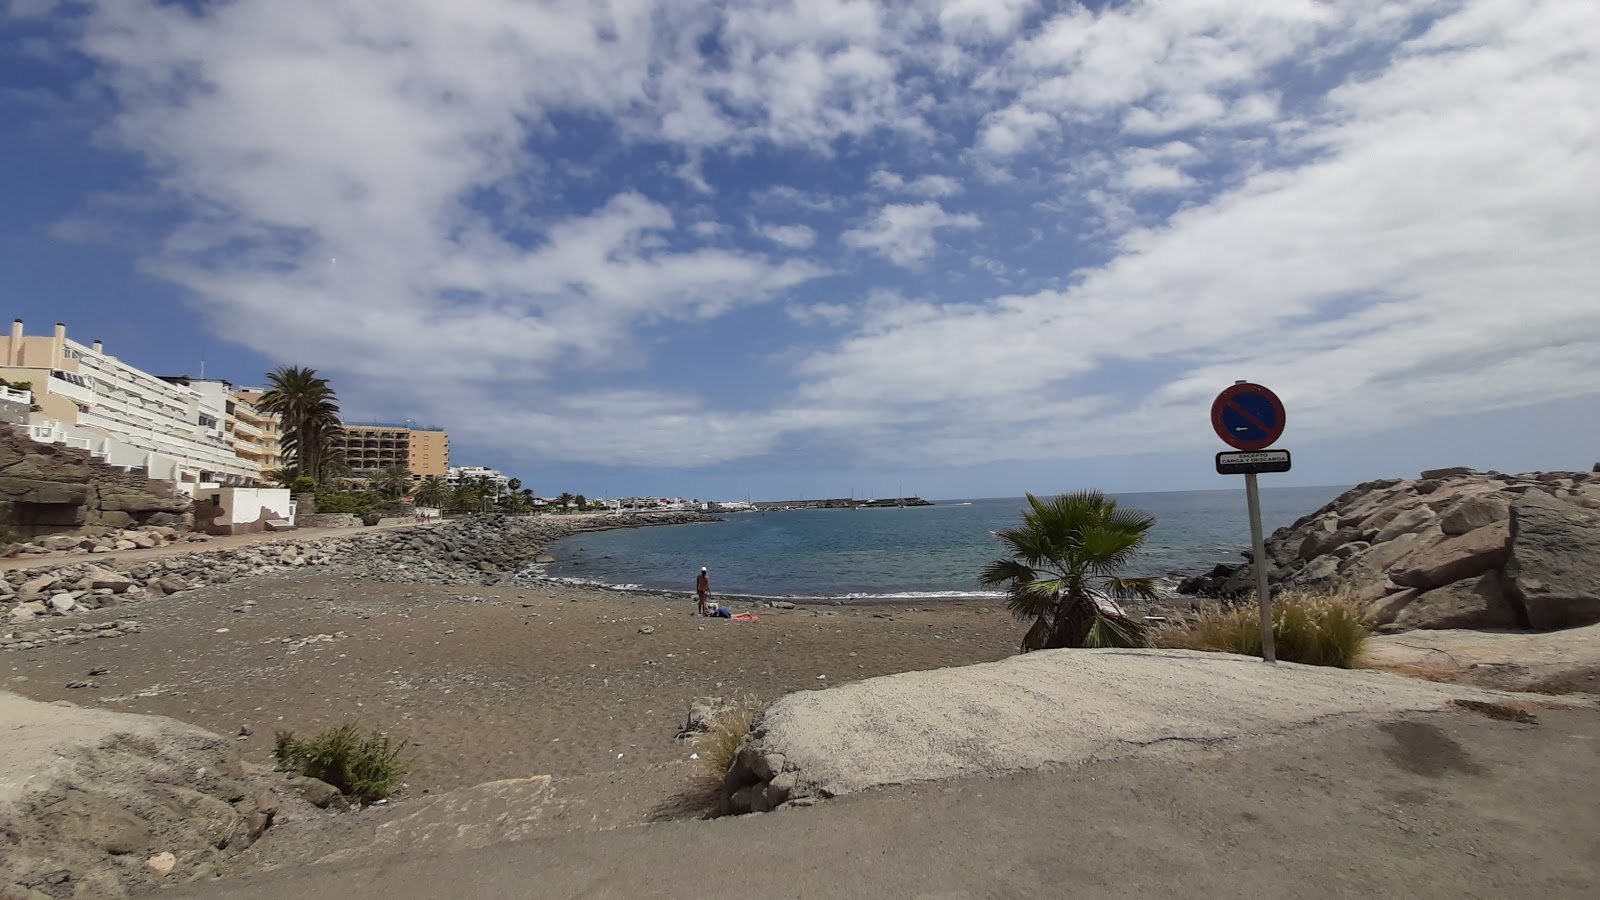 Zdjęcie Playa La Carrera z powierzchnią piasek z kamykami